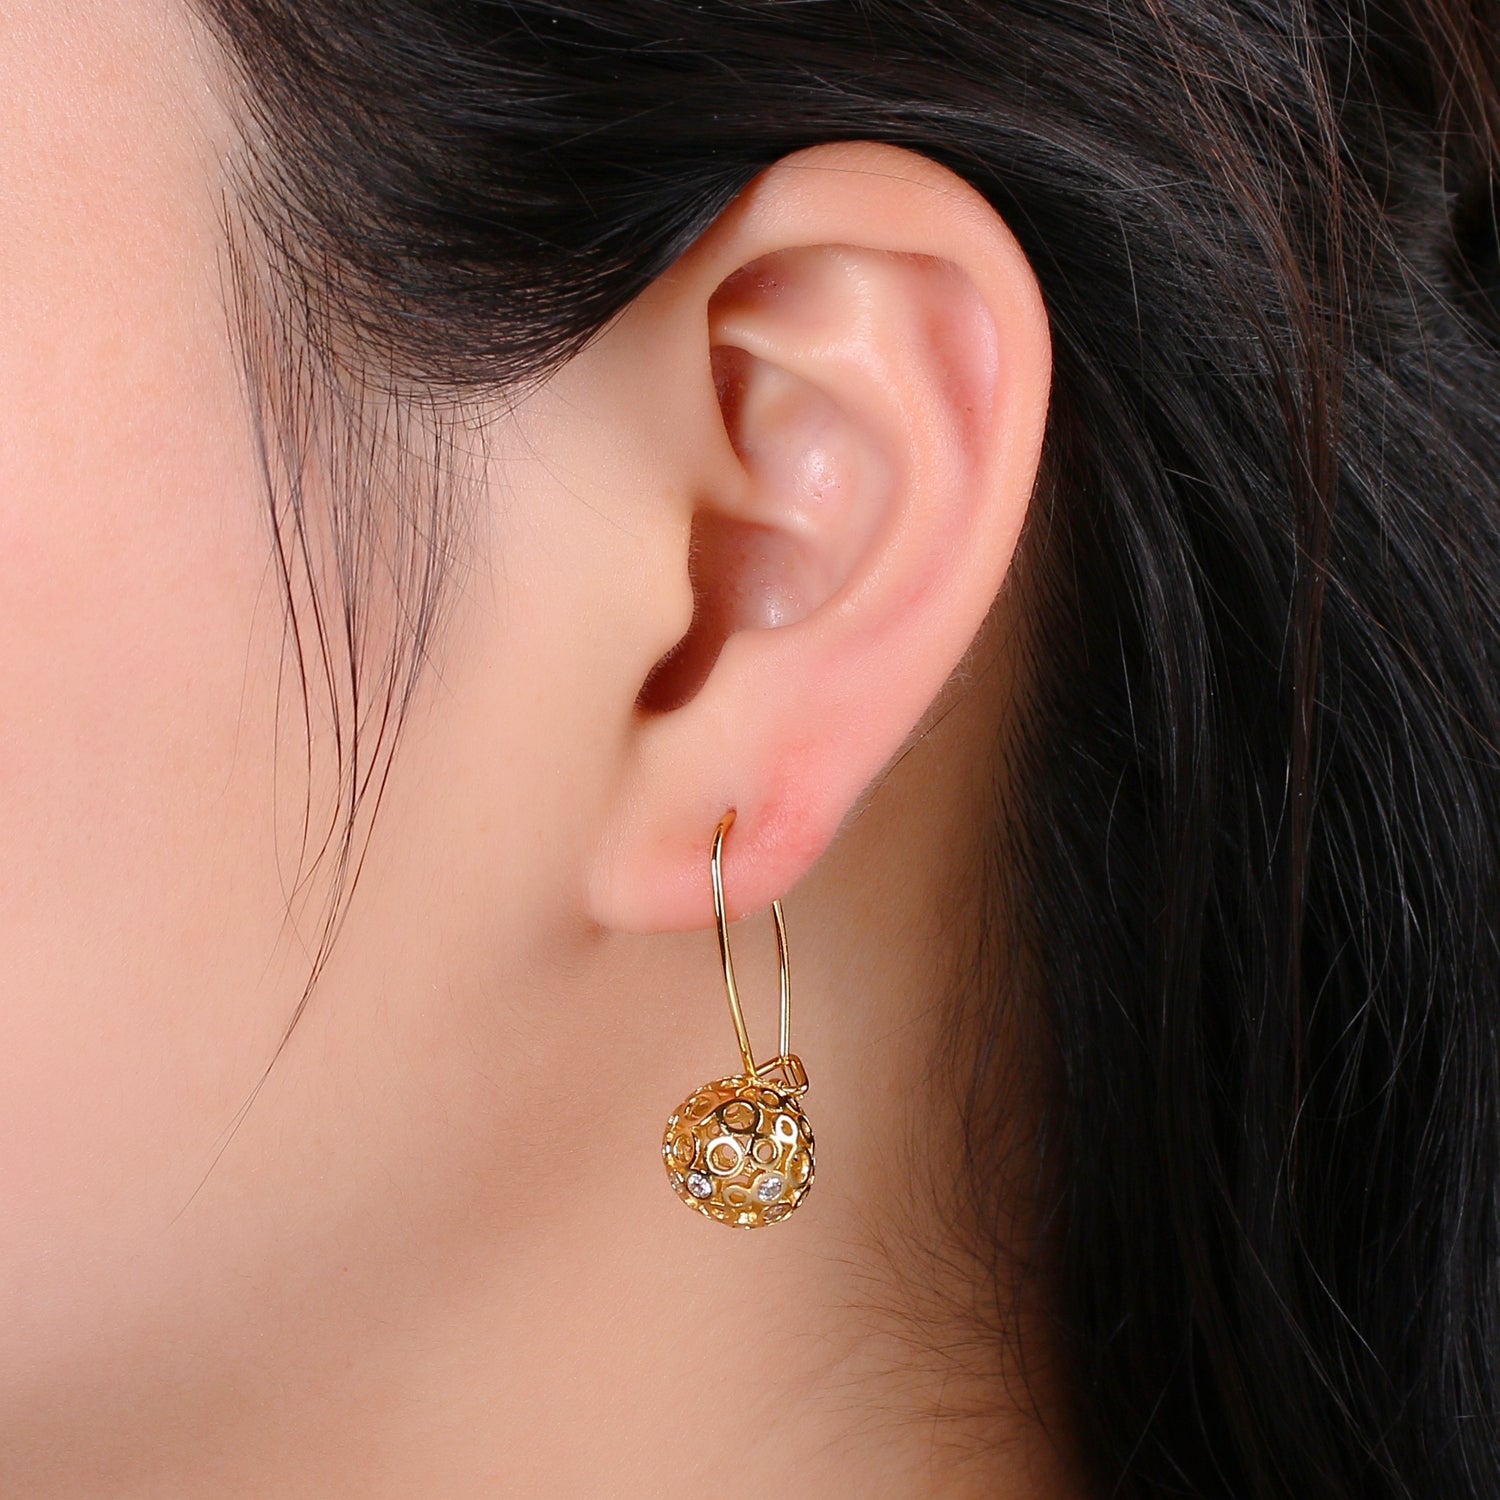 1 pair Gold Ball Earrings - 24k Gold Filled Drop Ball Earrings Dangle Earrings - Statement Jewelry Party Earring Ear-1302 - DLUXCA